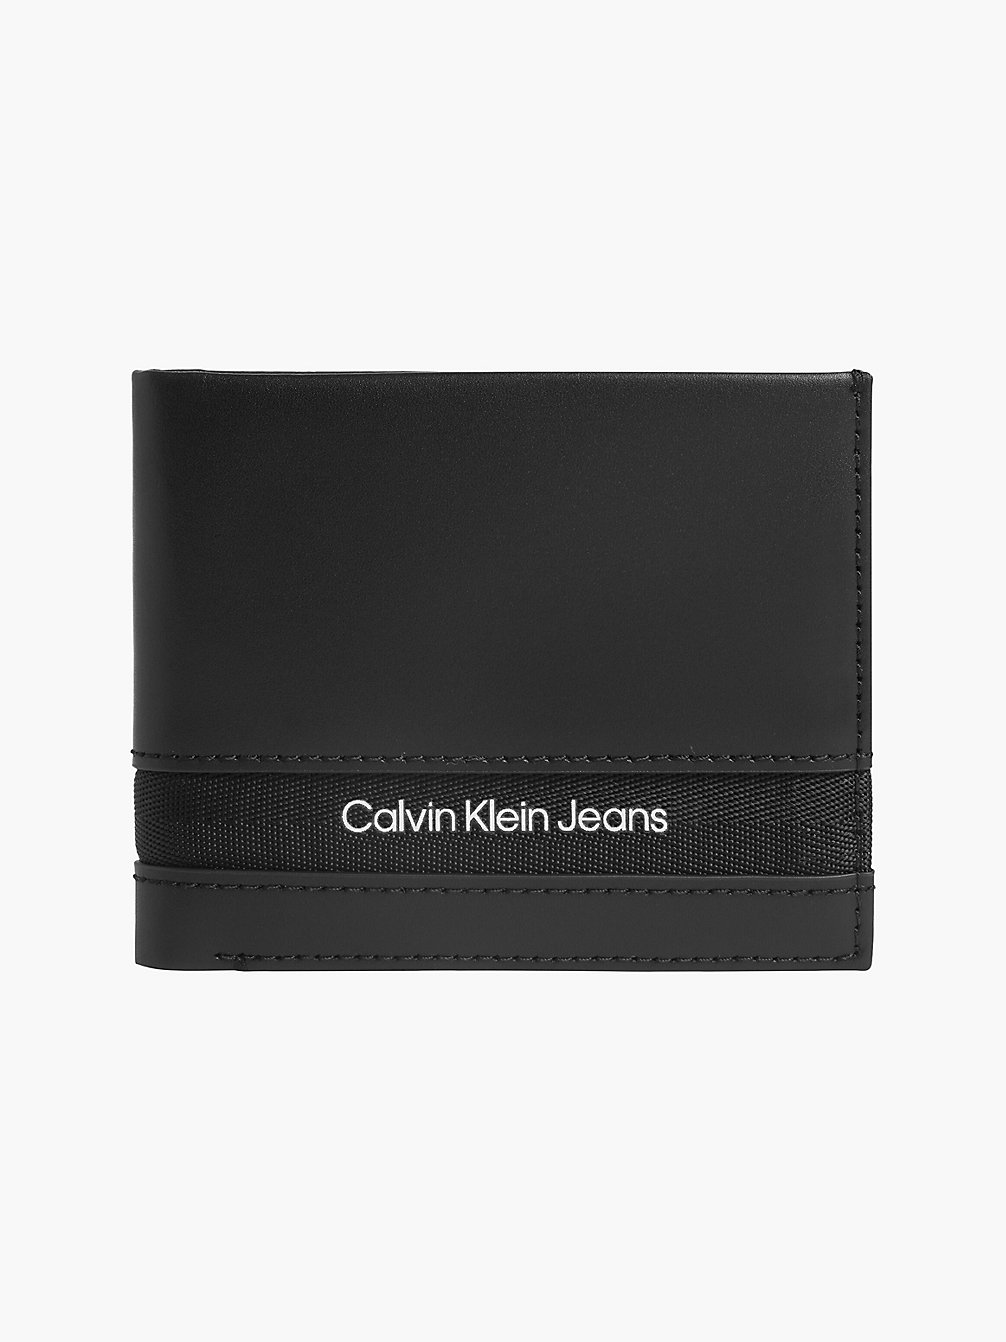 BLACK > Skórzany Składany Portfel Jednoczęściowy > undefined Mężczyźni - Calvin Klein